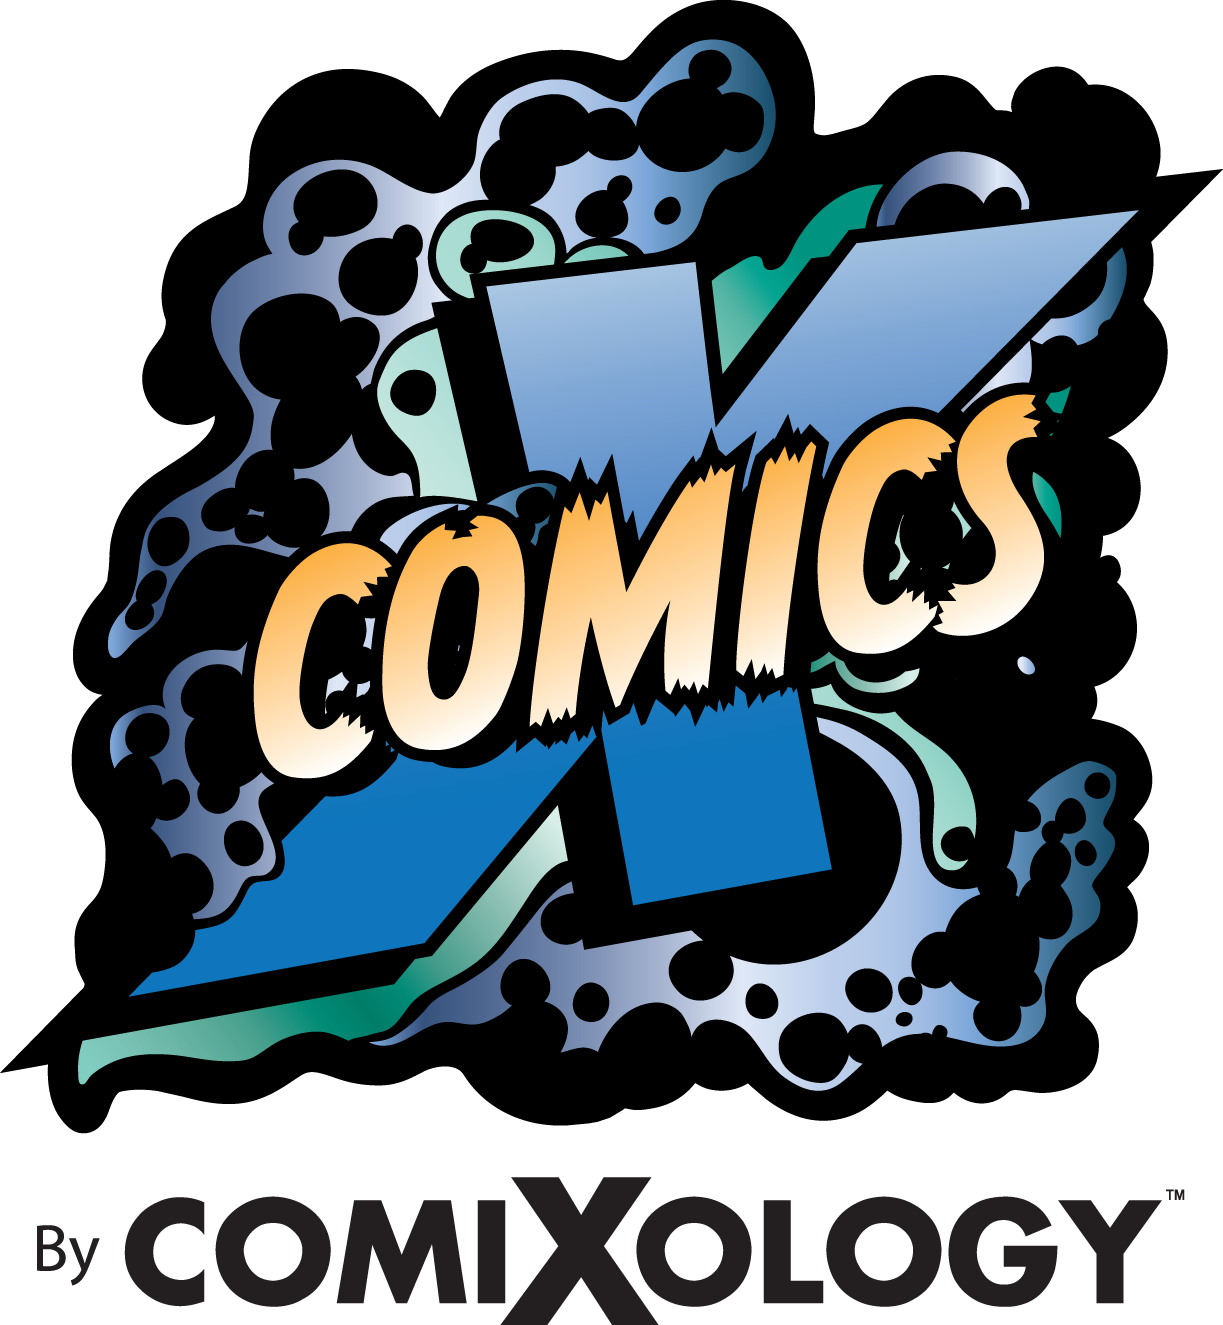 comics_by_comixology_logo_black_text